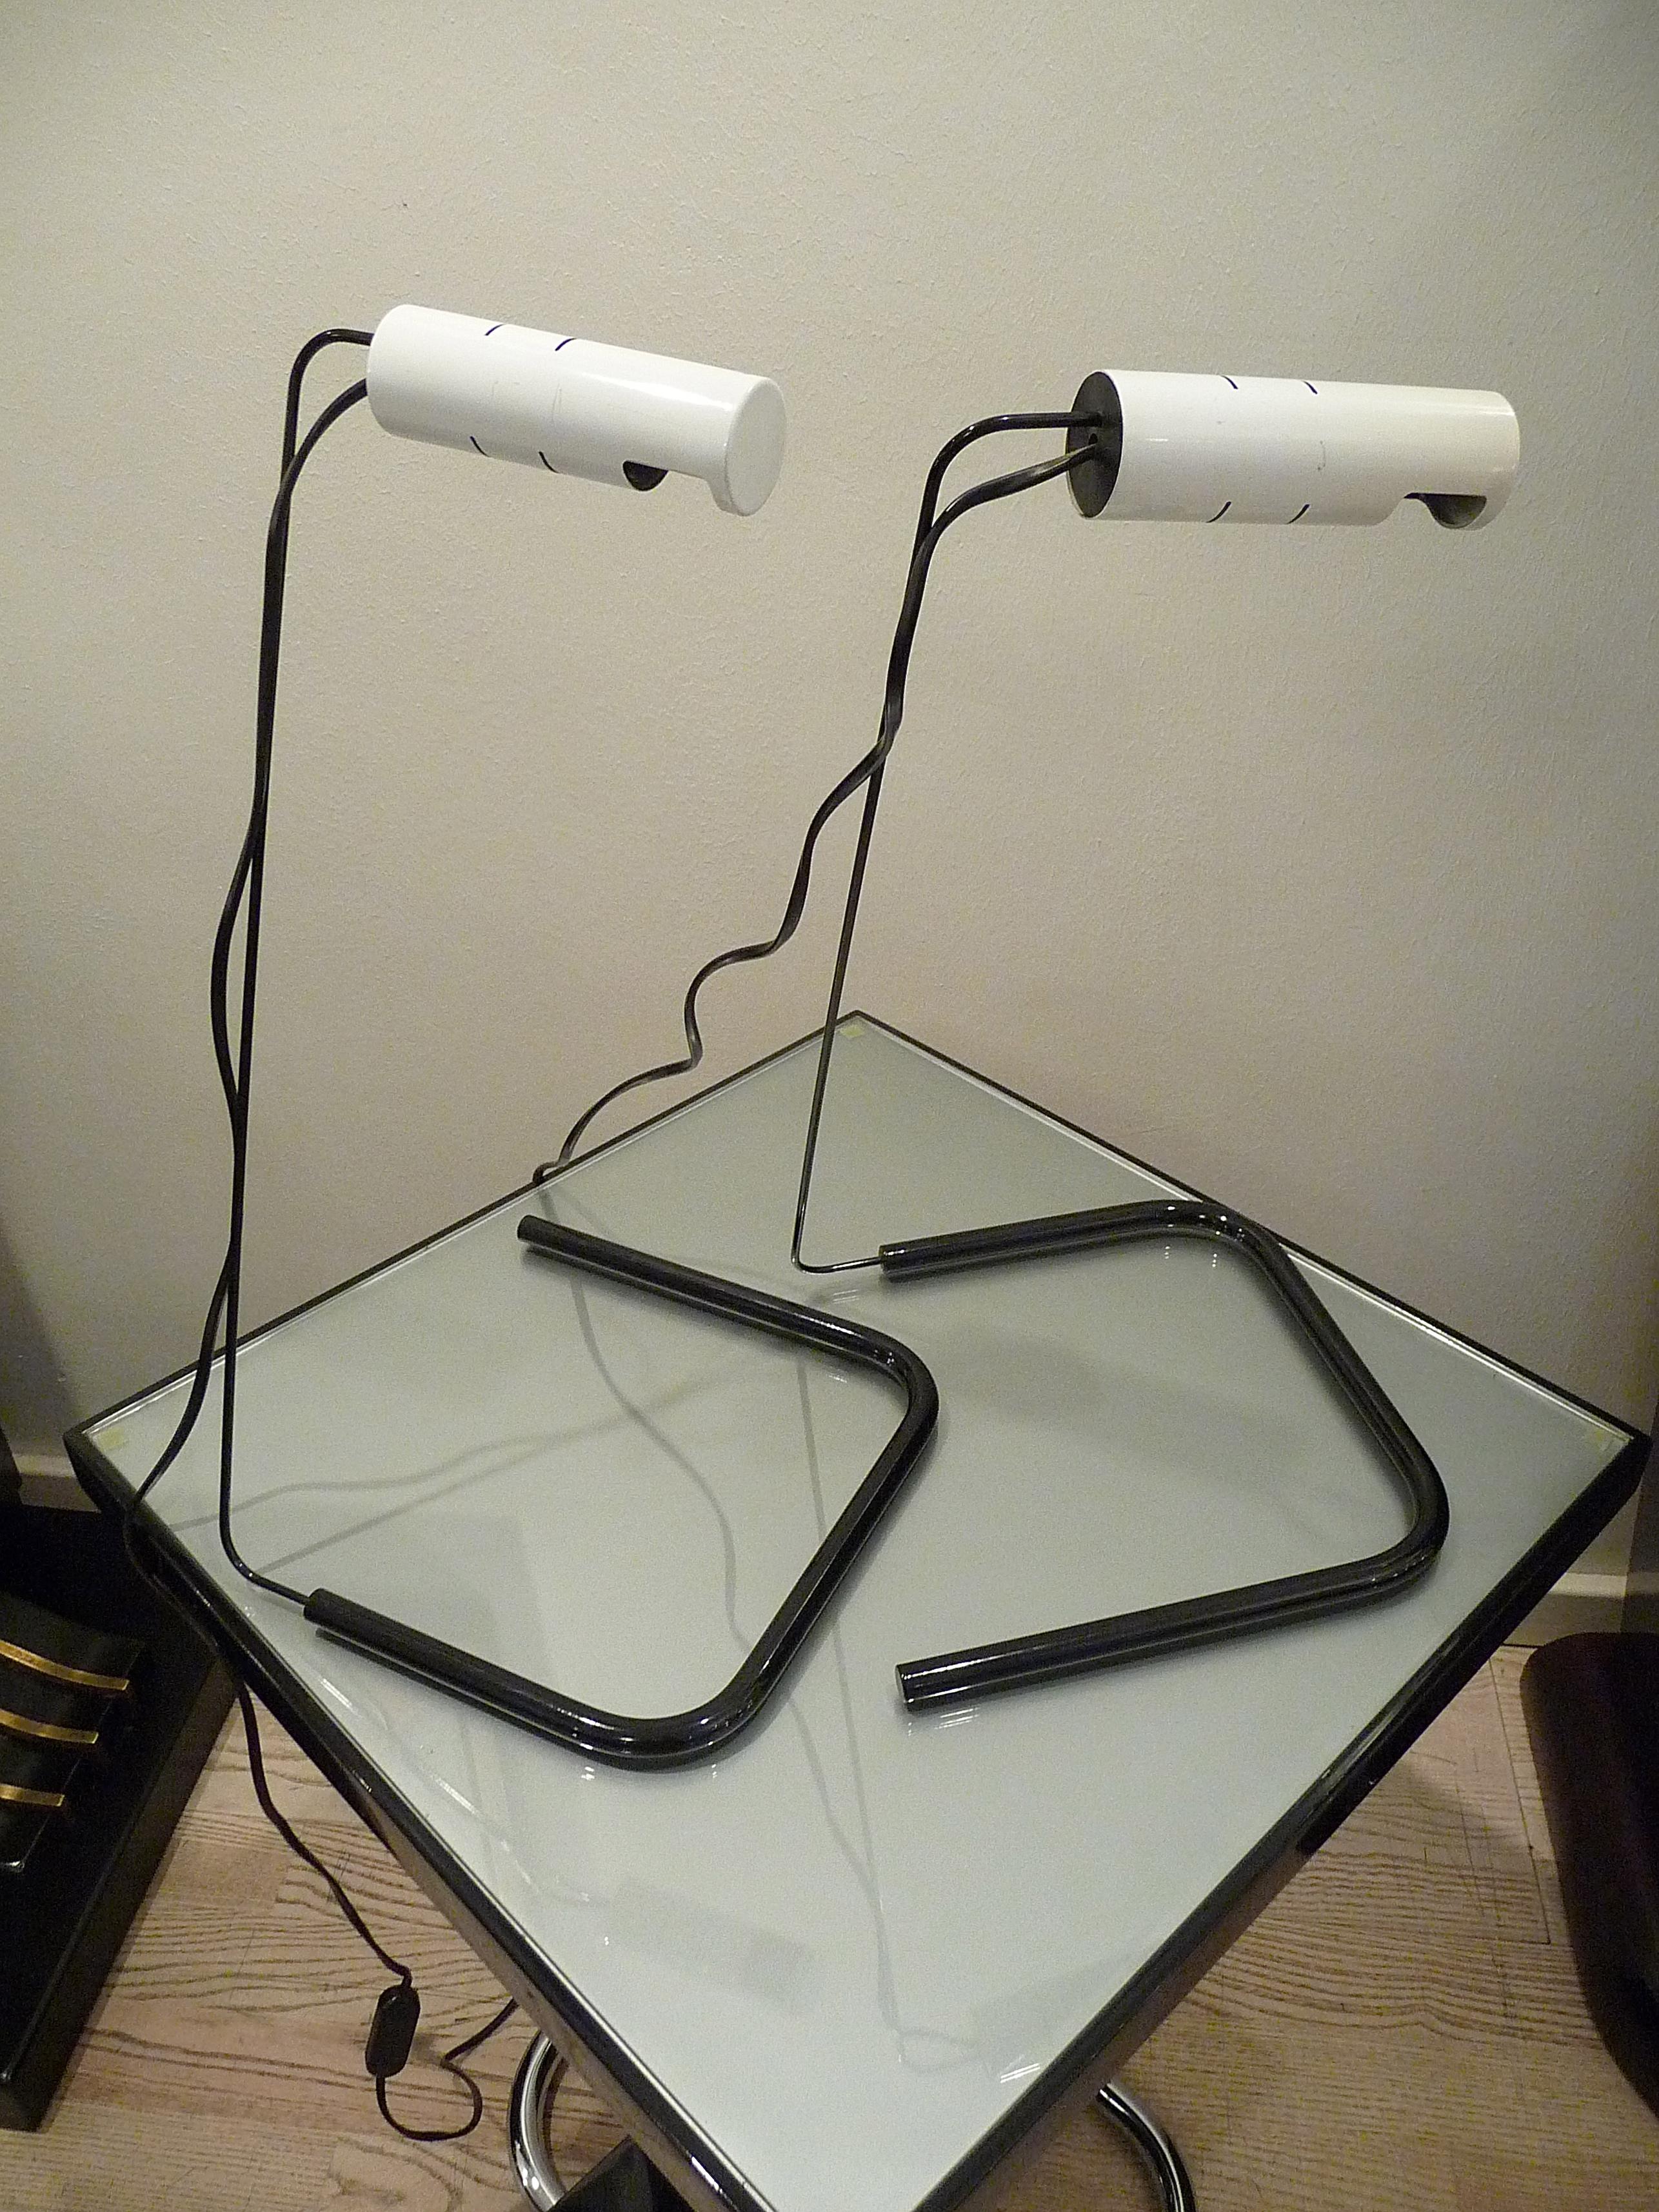 Rare lampe de bureau SLALOM, conçue par Vico Magistretti, fabriquée par O-Luce, Italie, 1981. Lampe réglable, l'abat-jour est orientable et ajustable en plusieurs positions grâce à la poignée en plastique noir. Deux articles disponibles, l'un porte